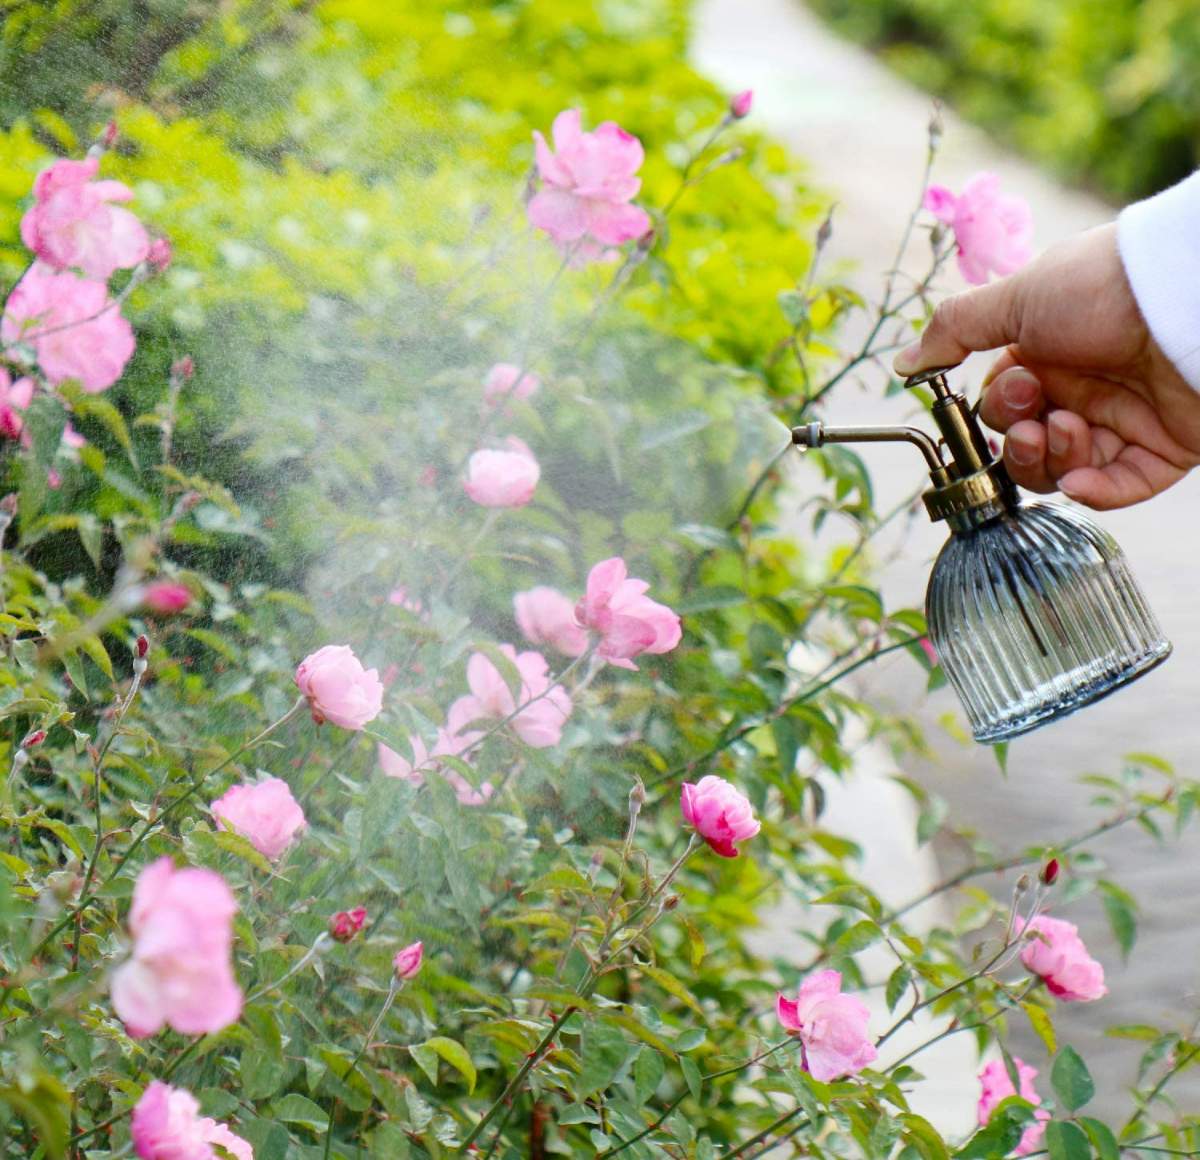 園芸用霧吹き | アンティークなデザインが素敵なお花水やり用の霧吹きです。色々な用途に用いることができます。お花をはじめとしてハーブや多肉植物といった植物へ水やりのほか、家庭の掃除や窓拭きにもご利用可能です。